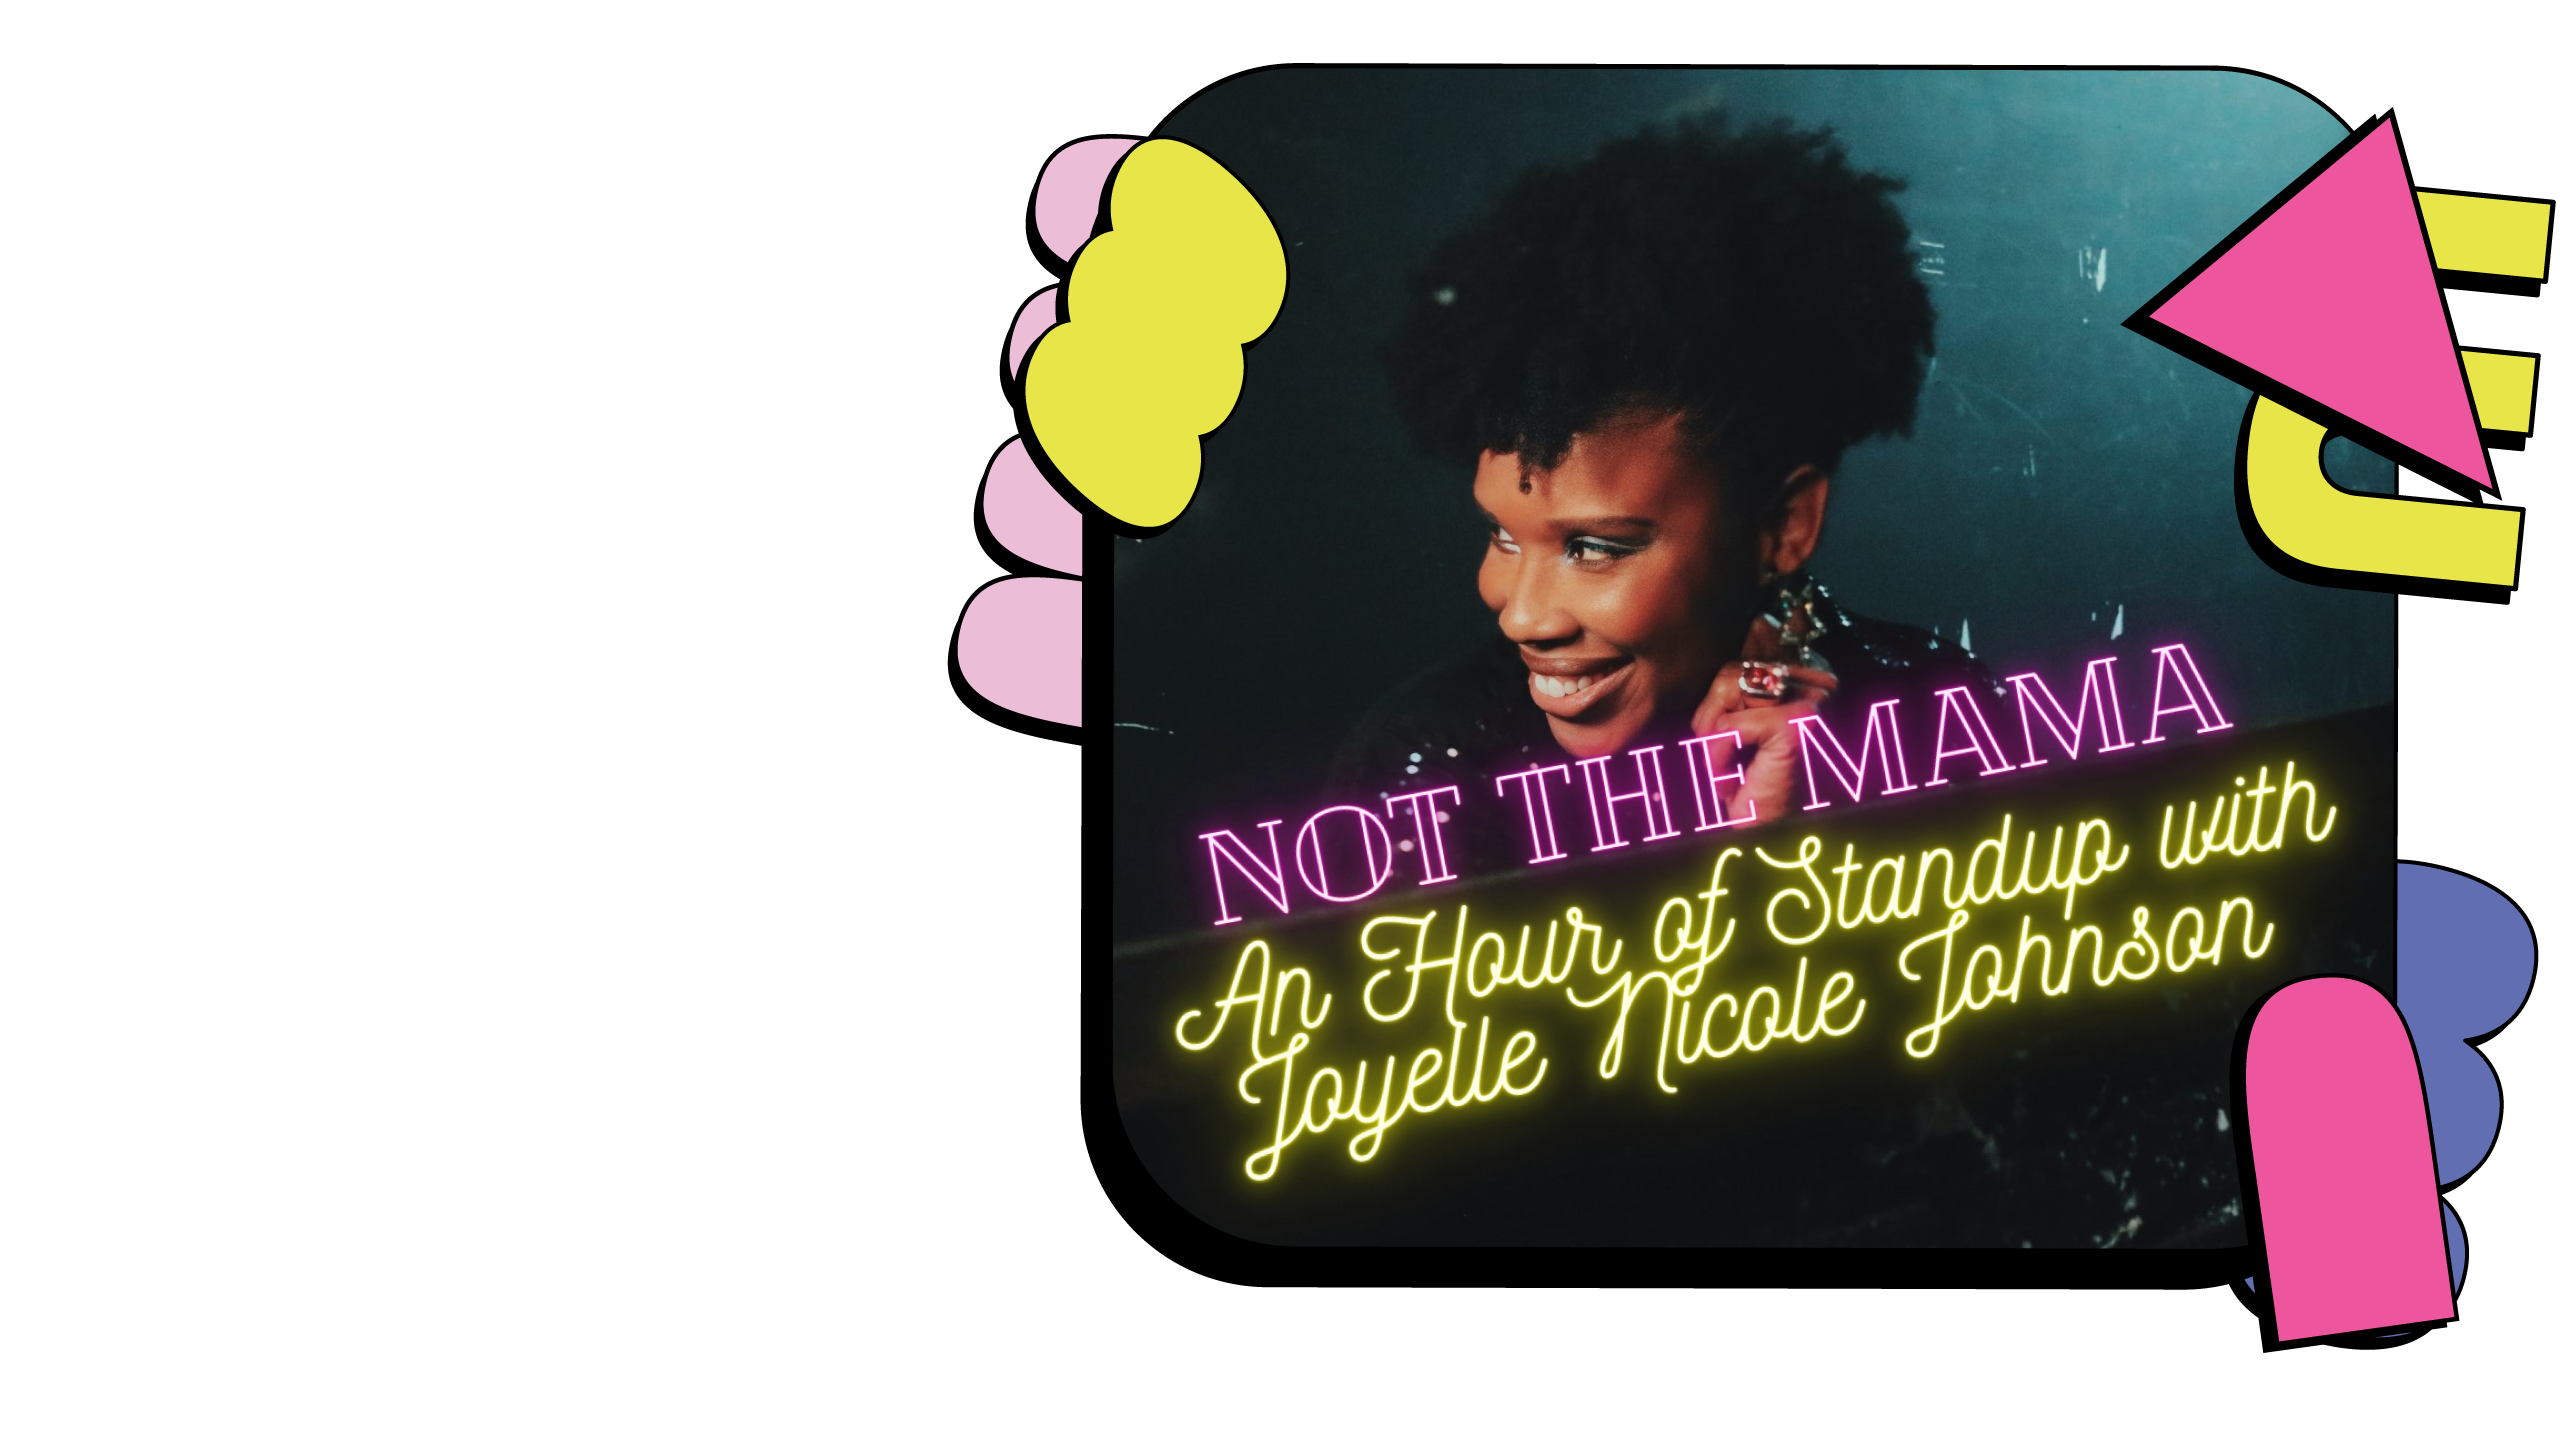 Promotional image for Joyelle Nicole Johnson: Not the mama